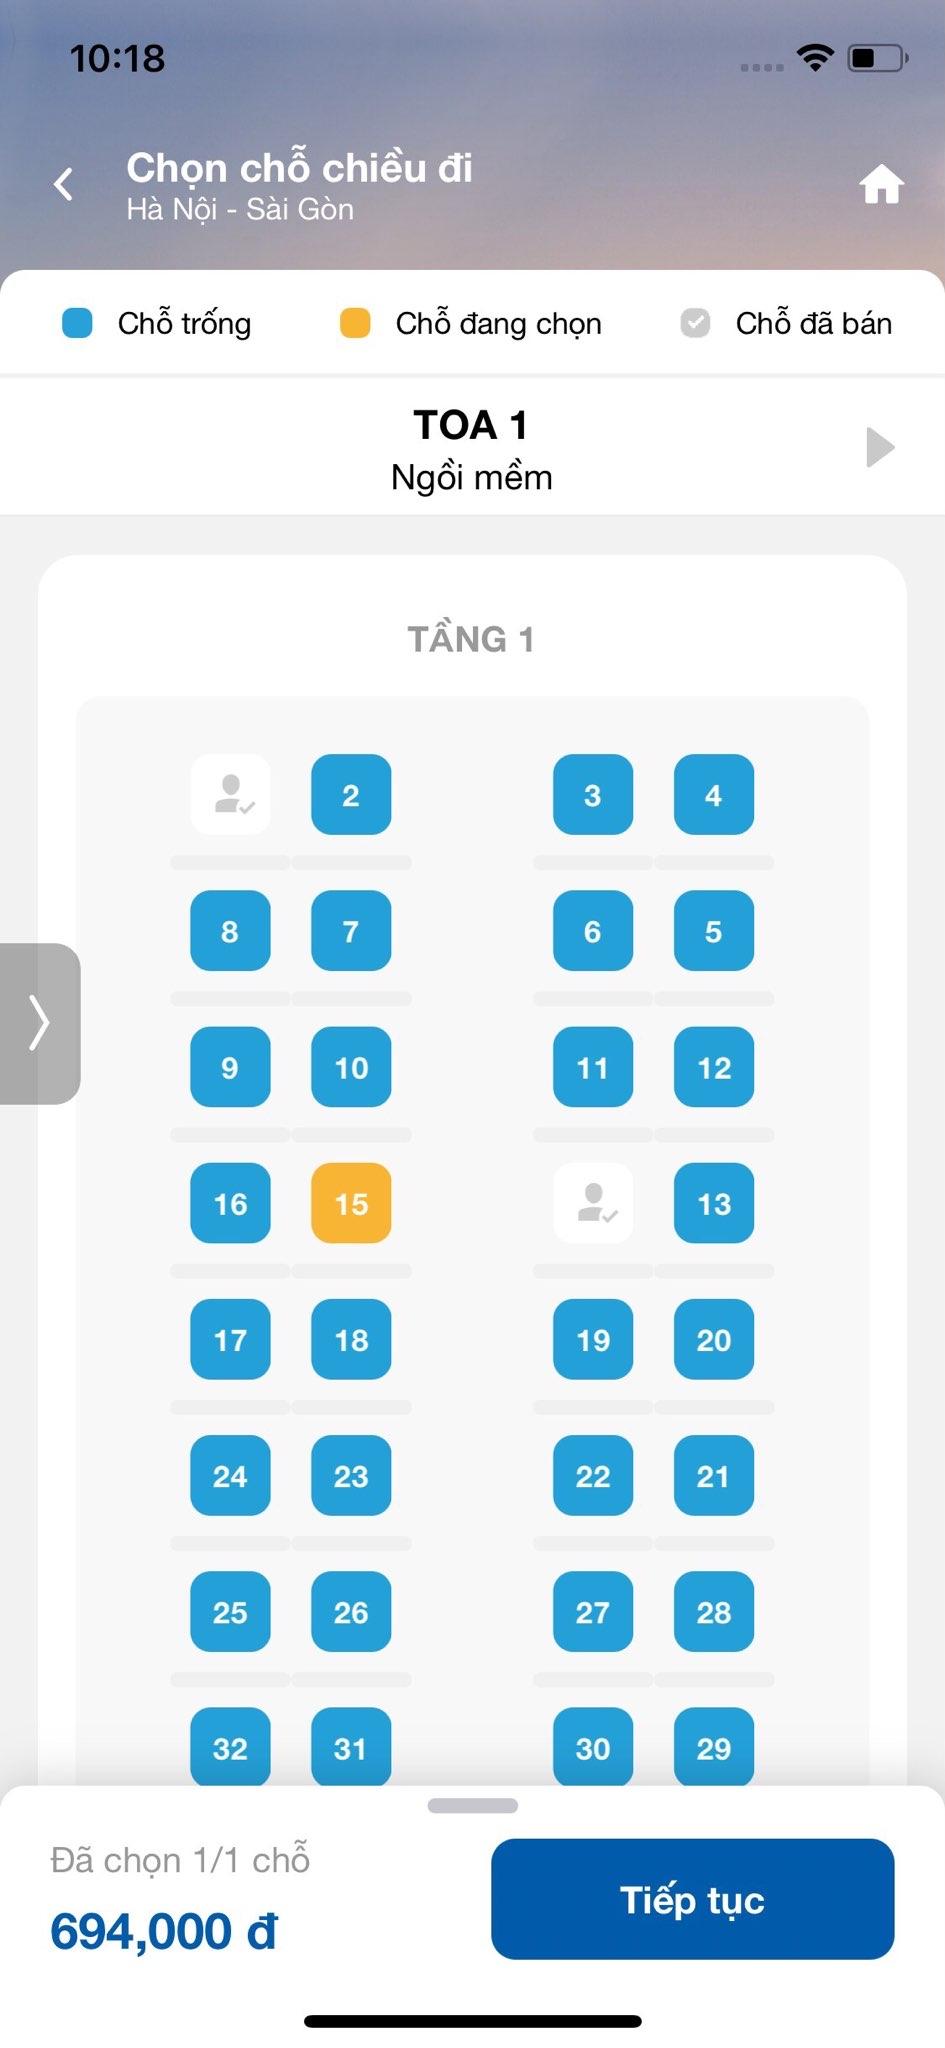 Giá vé tàu được hiển thị tương ứng với vị trí chỗ ngồi bạn chọn